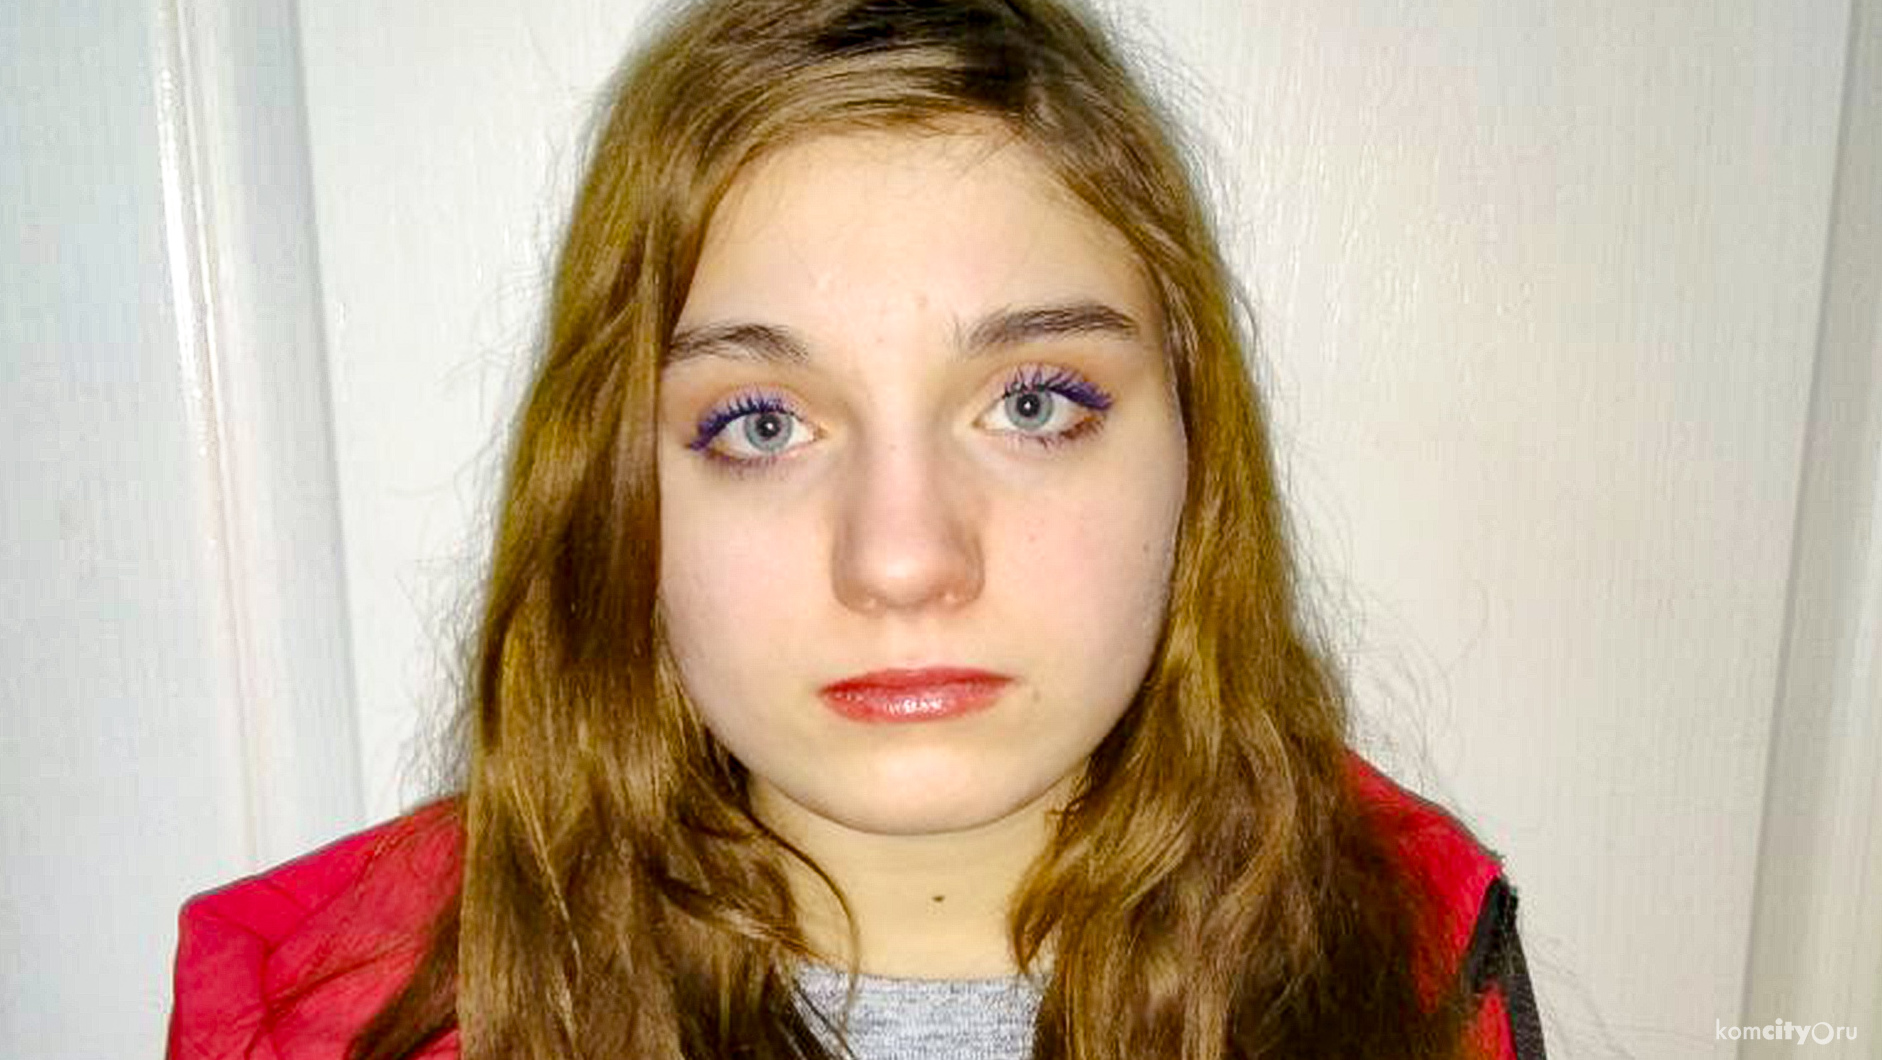 Полиция разыскивает пропавшую девушку-подростка